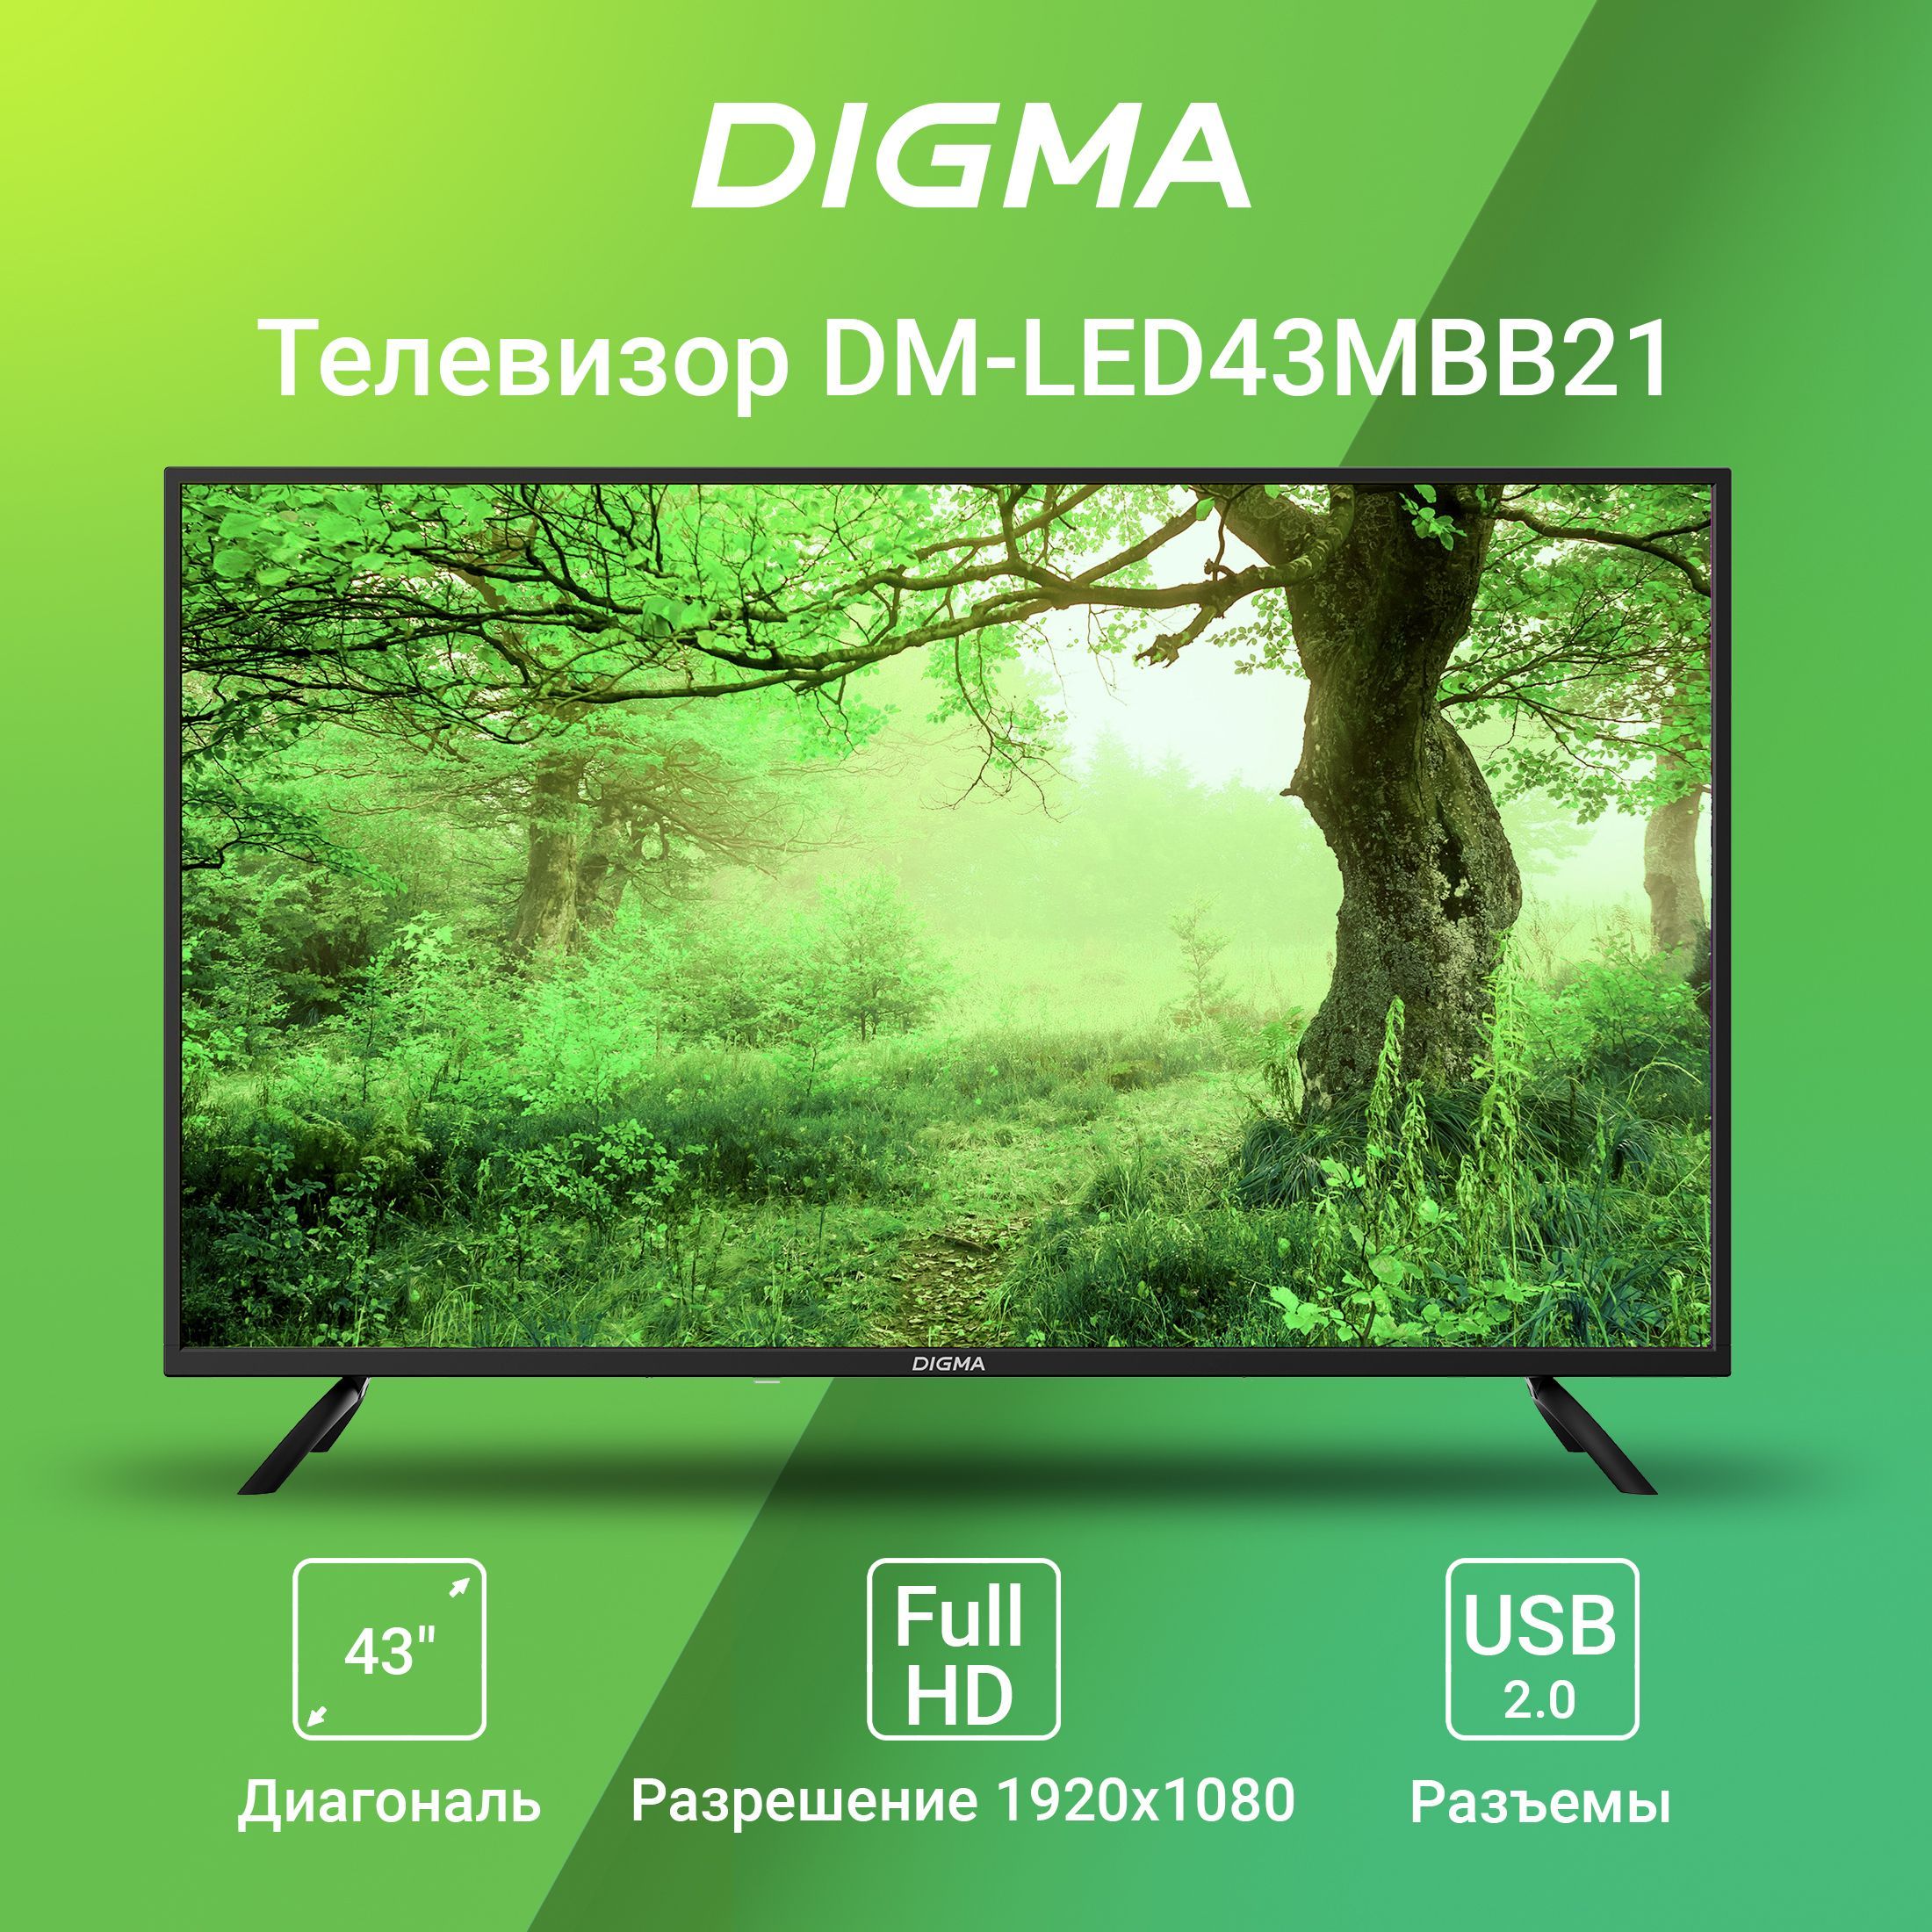 Телевизор Дигма 43. Digma телевизор DM-led43mbb21. Digma DM-led43mbb21 фото телевизора. Digma pro телевизор 43